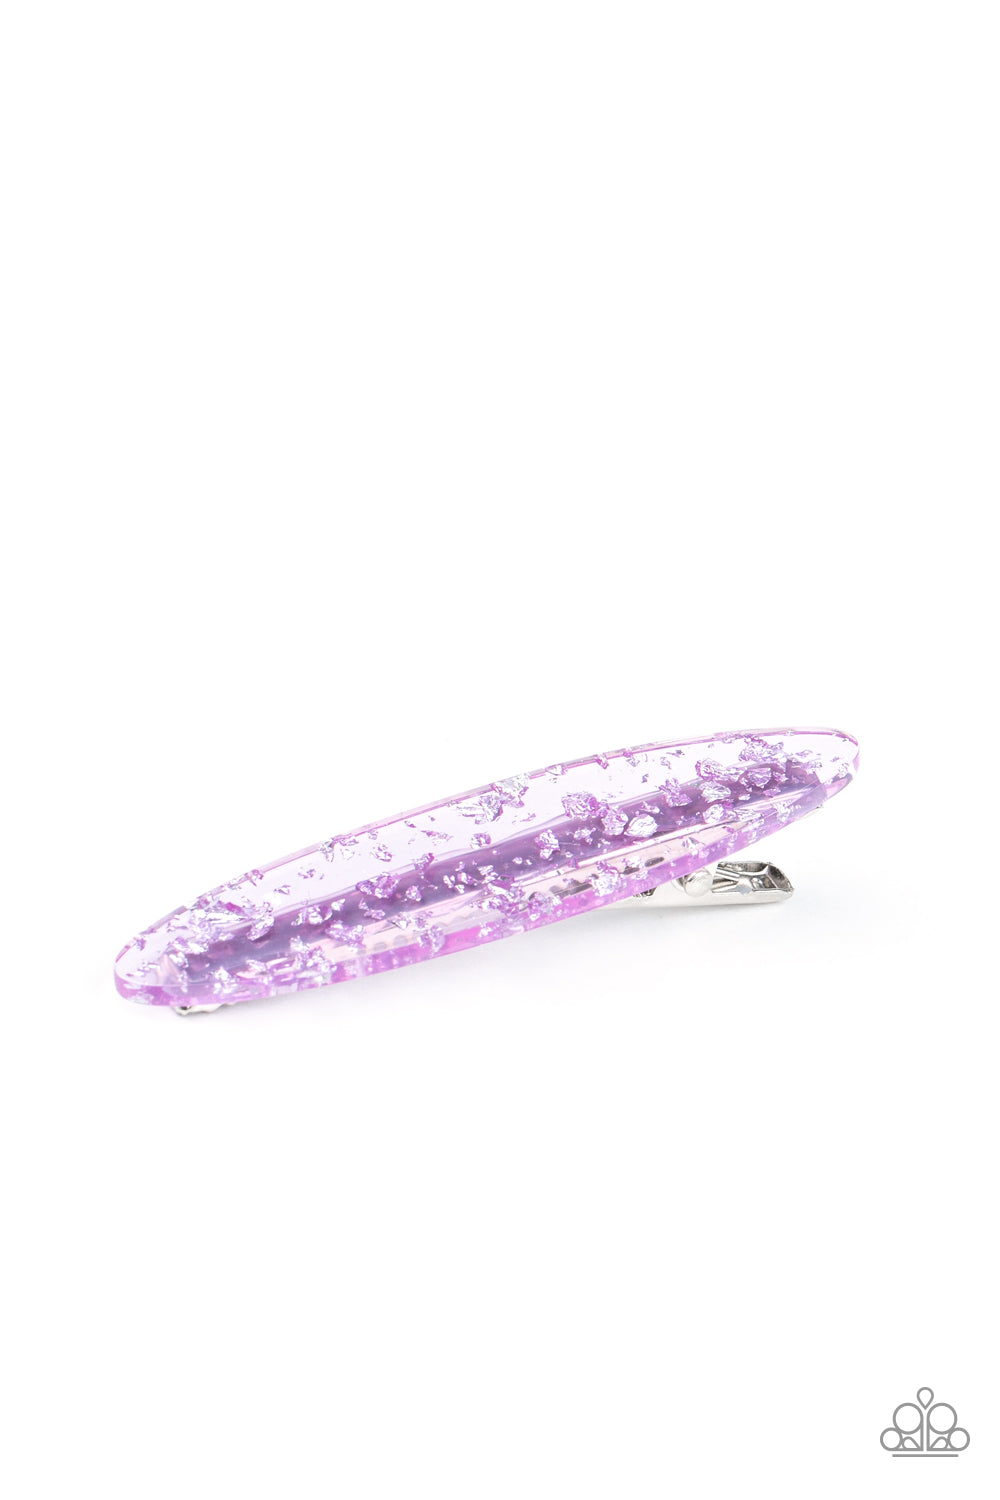 Confetti Couture Purple Hair Clip - Paparazzi Accessories